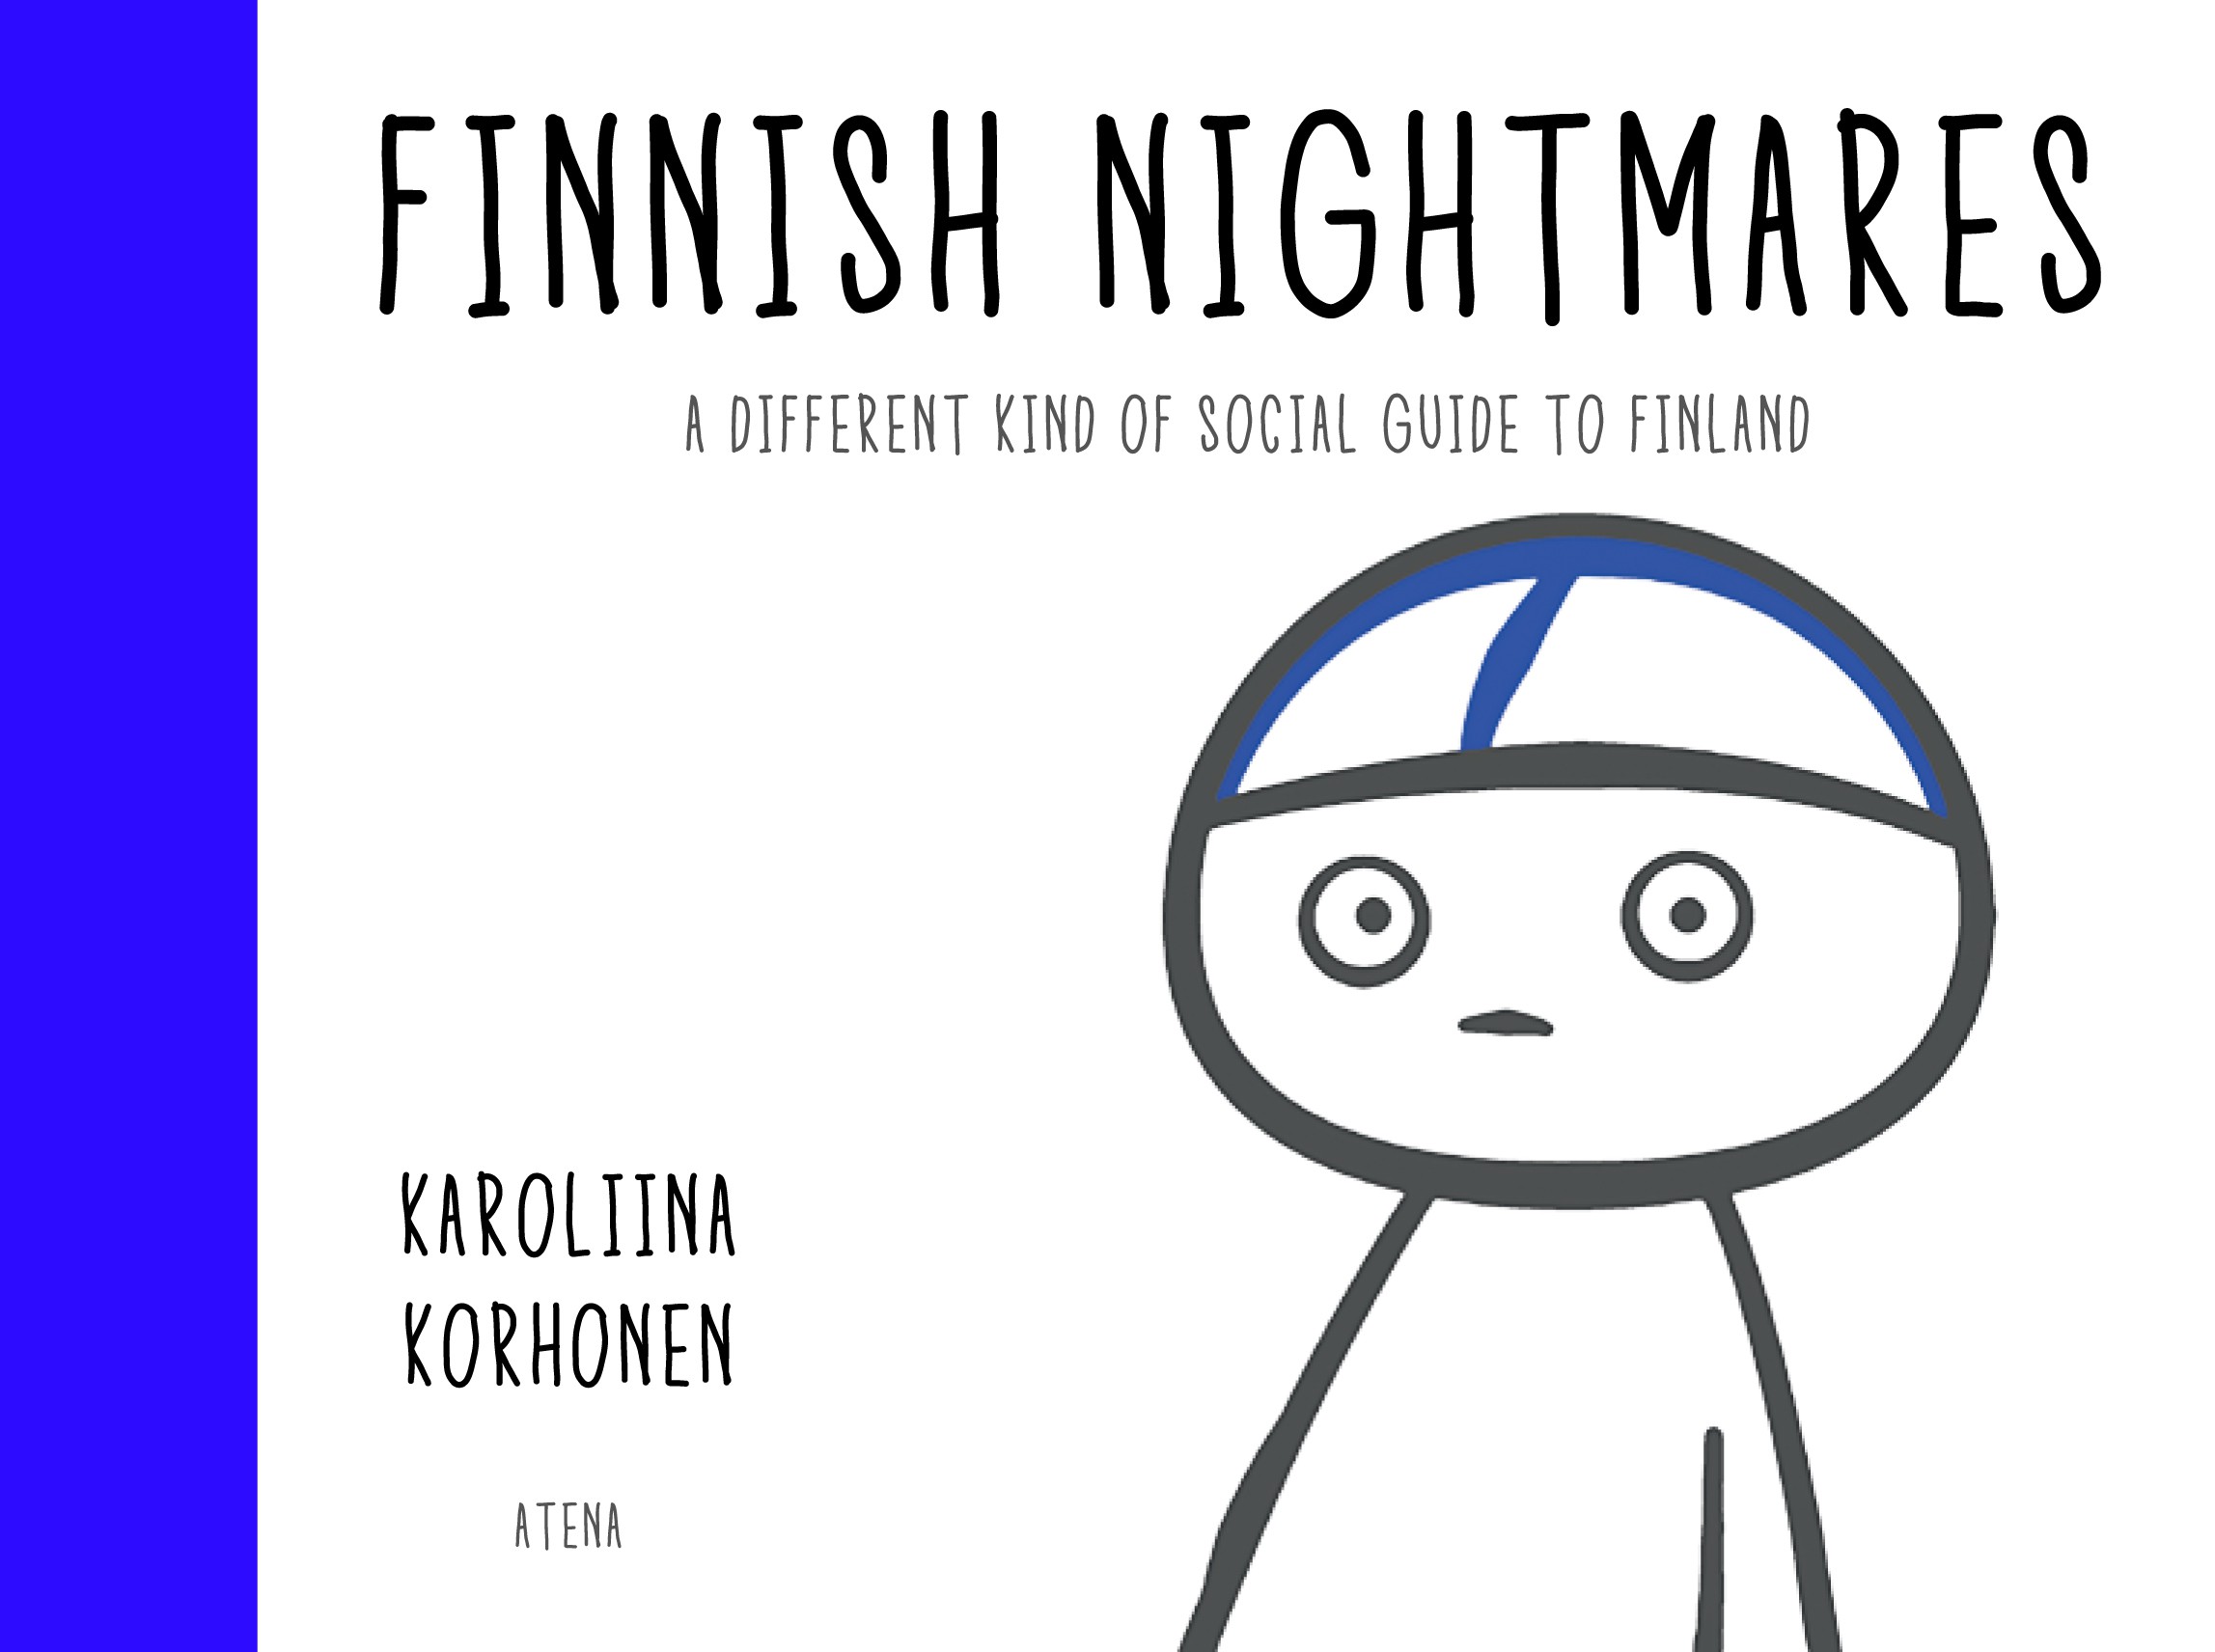 Finnish Nightmares 